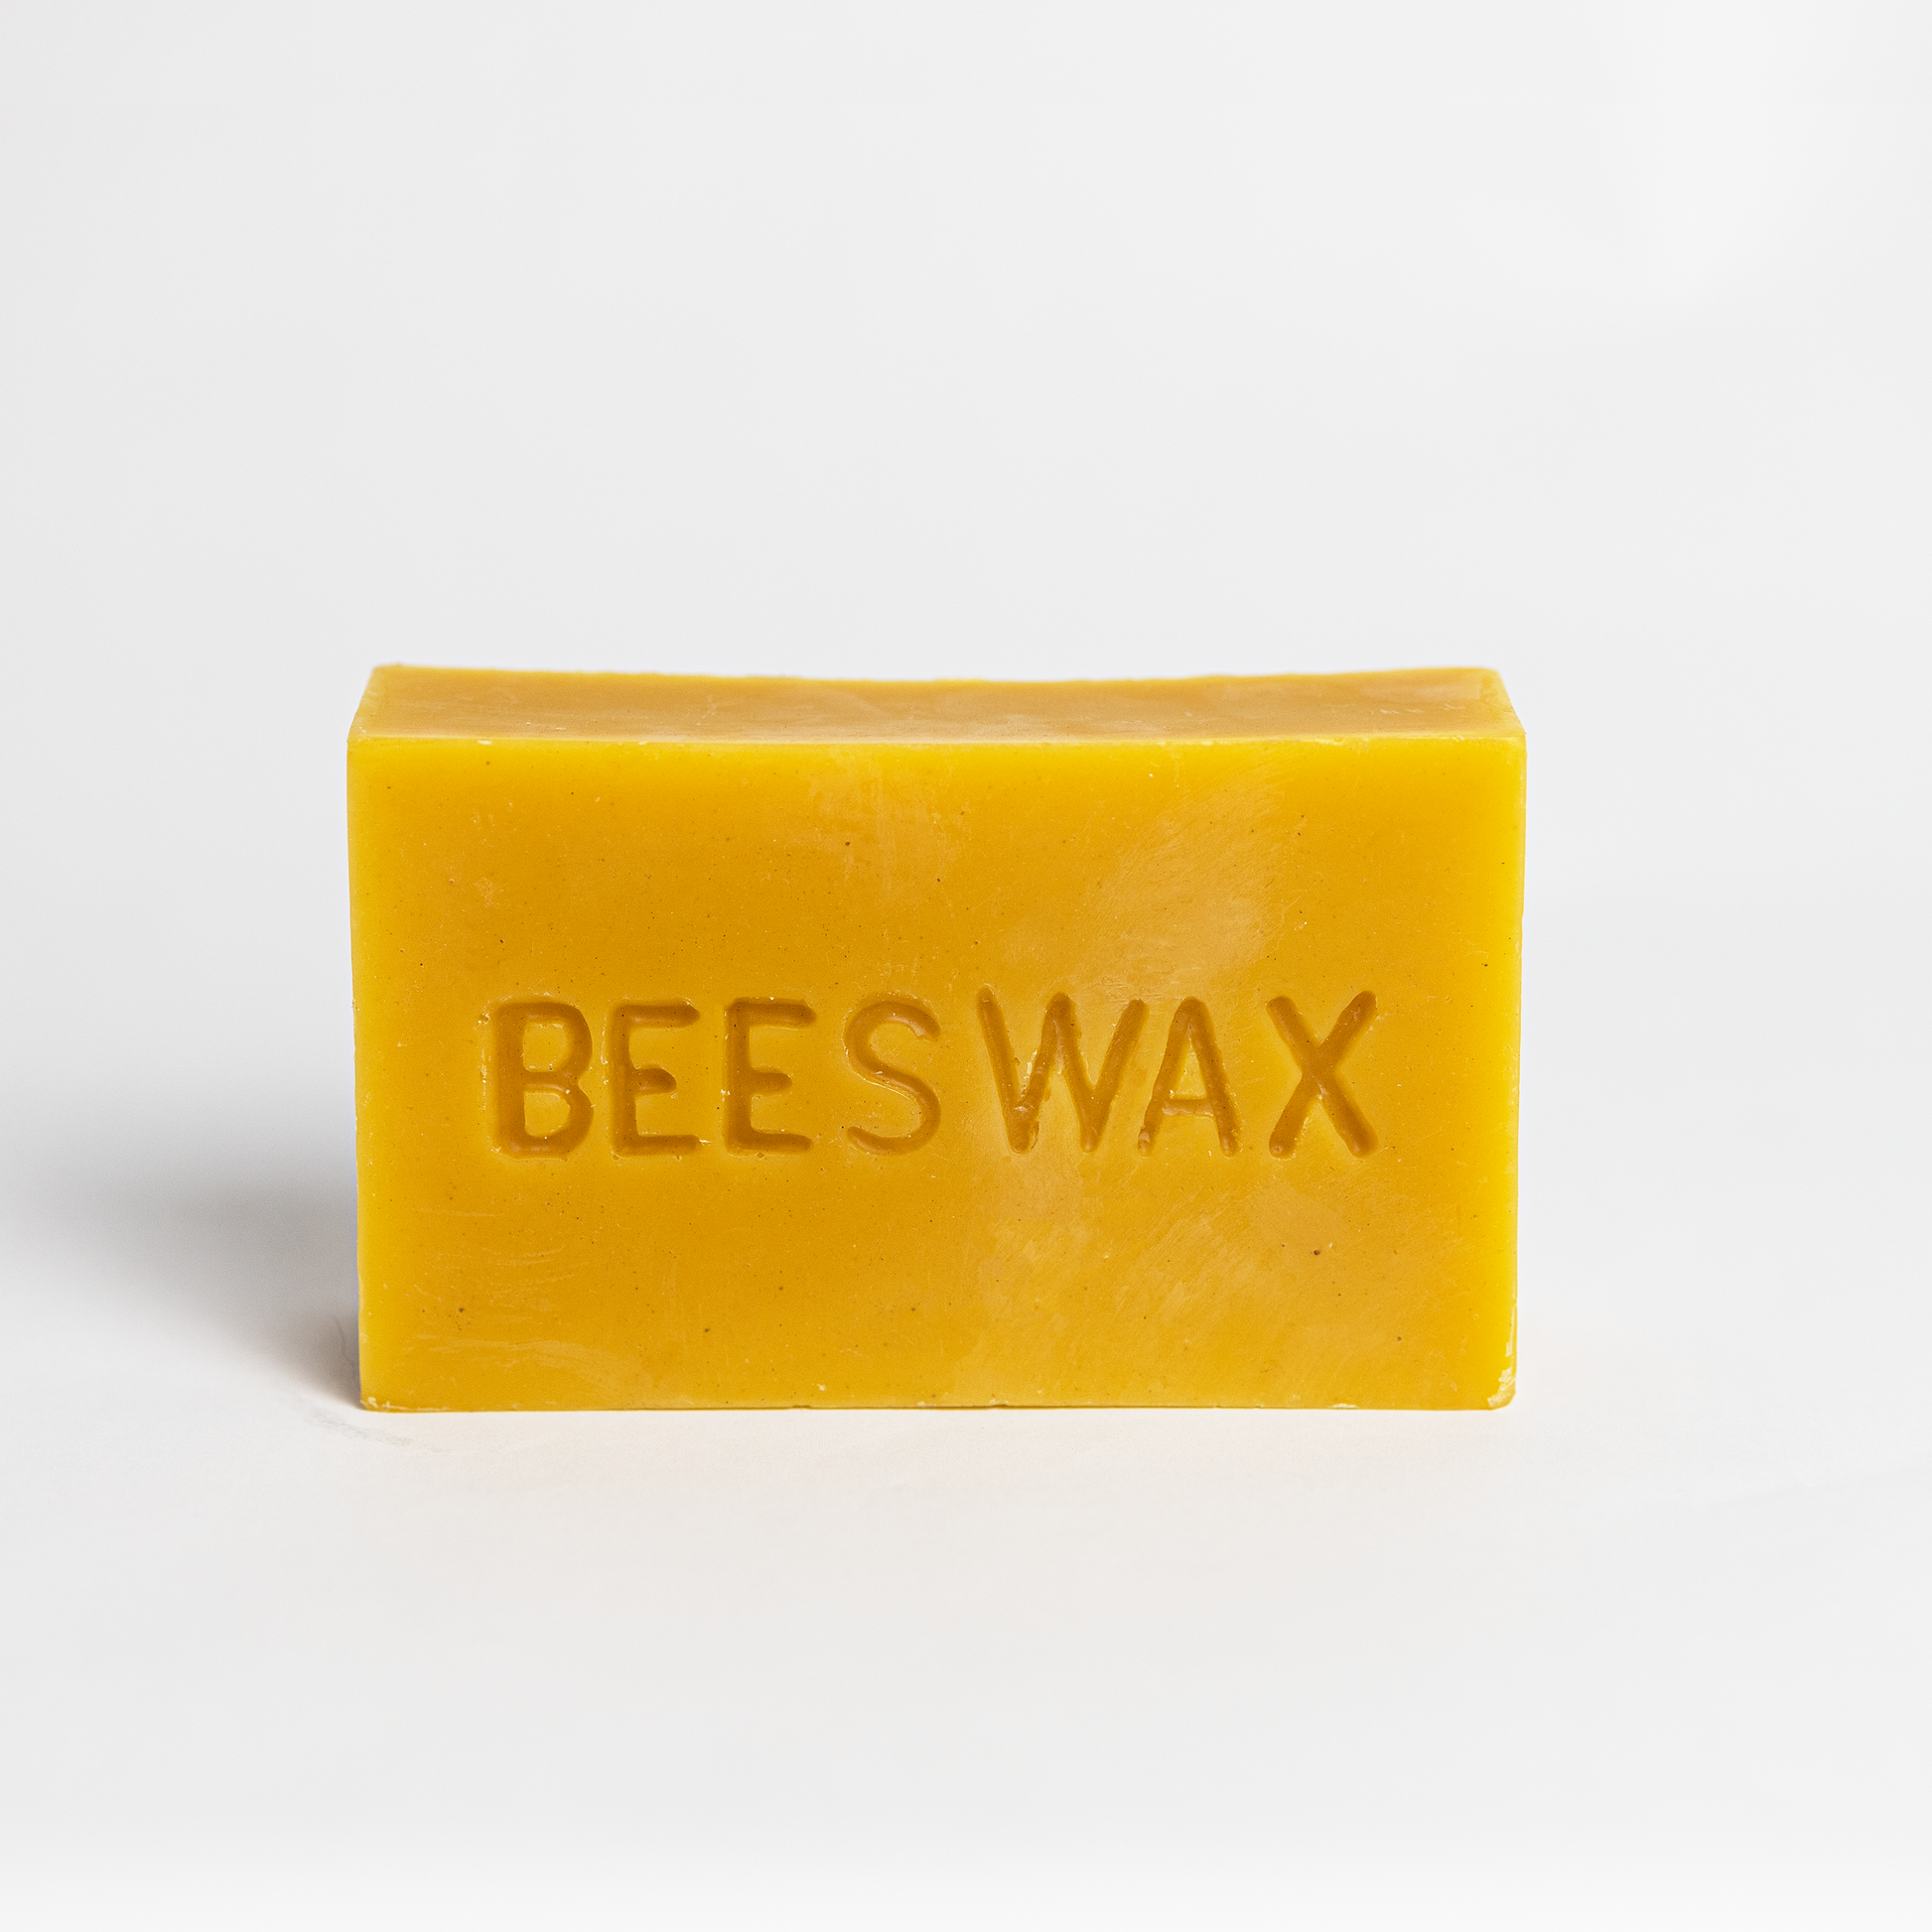 Bees Wax 1lb